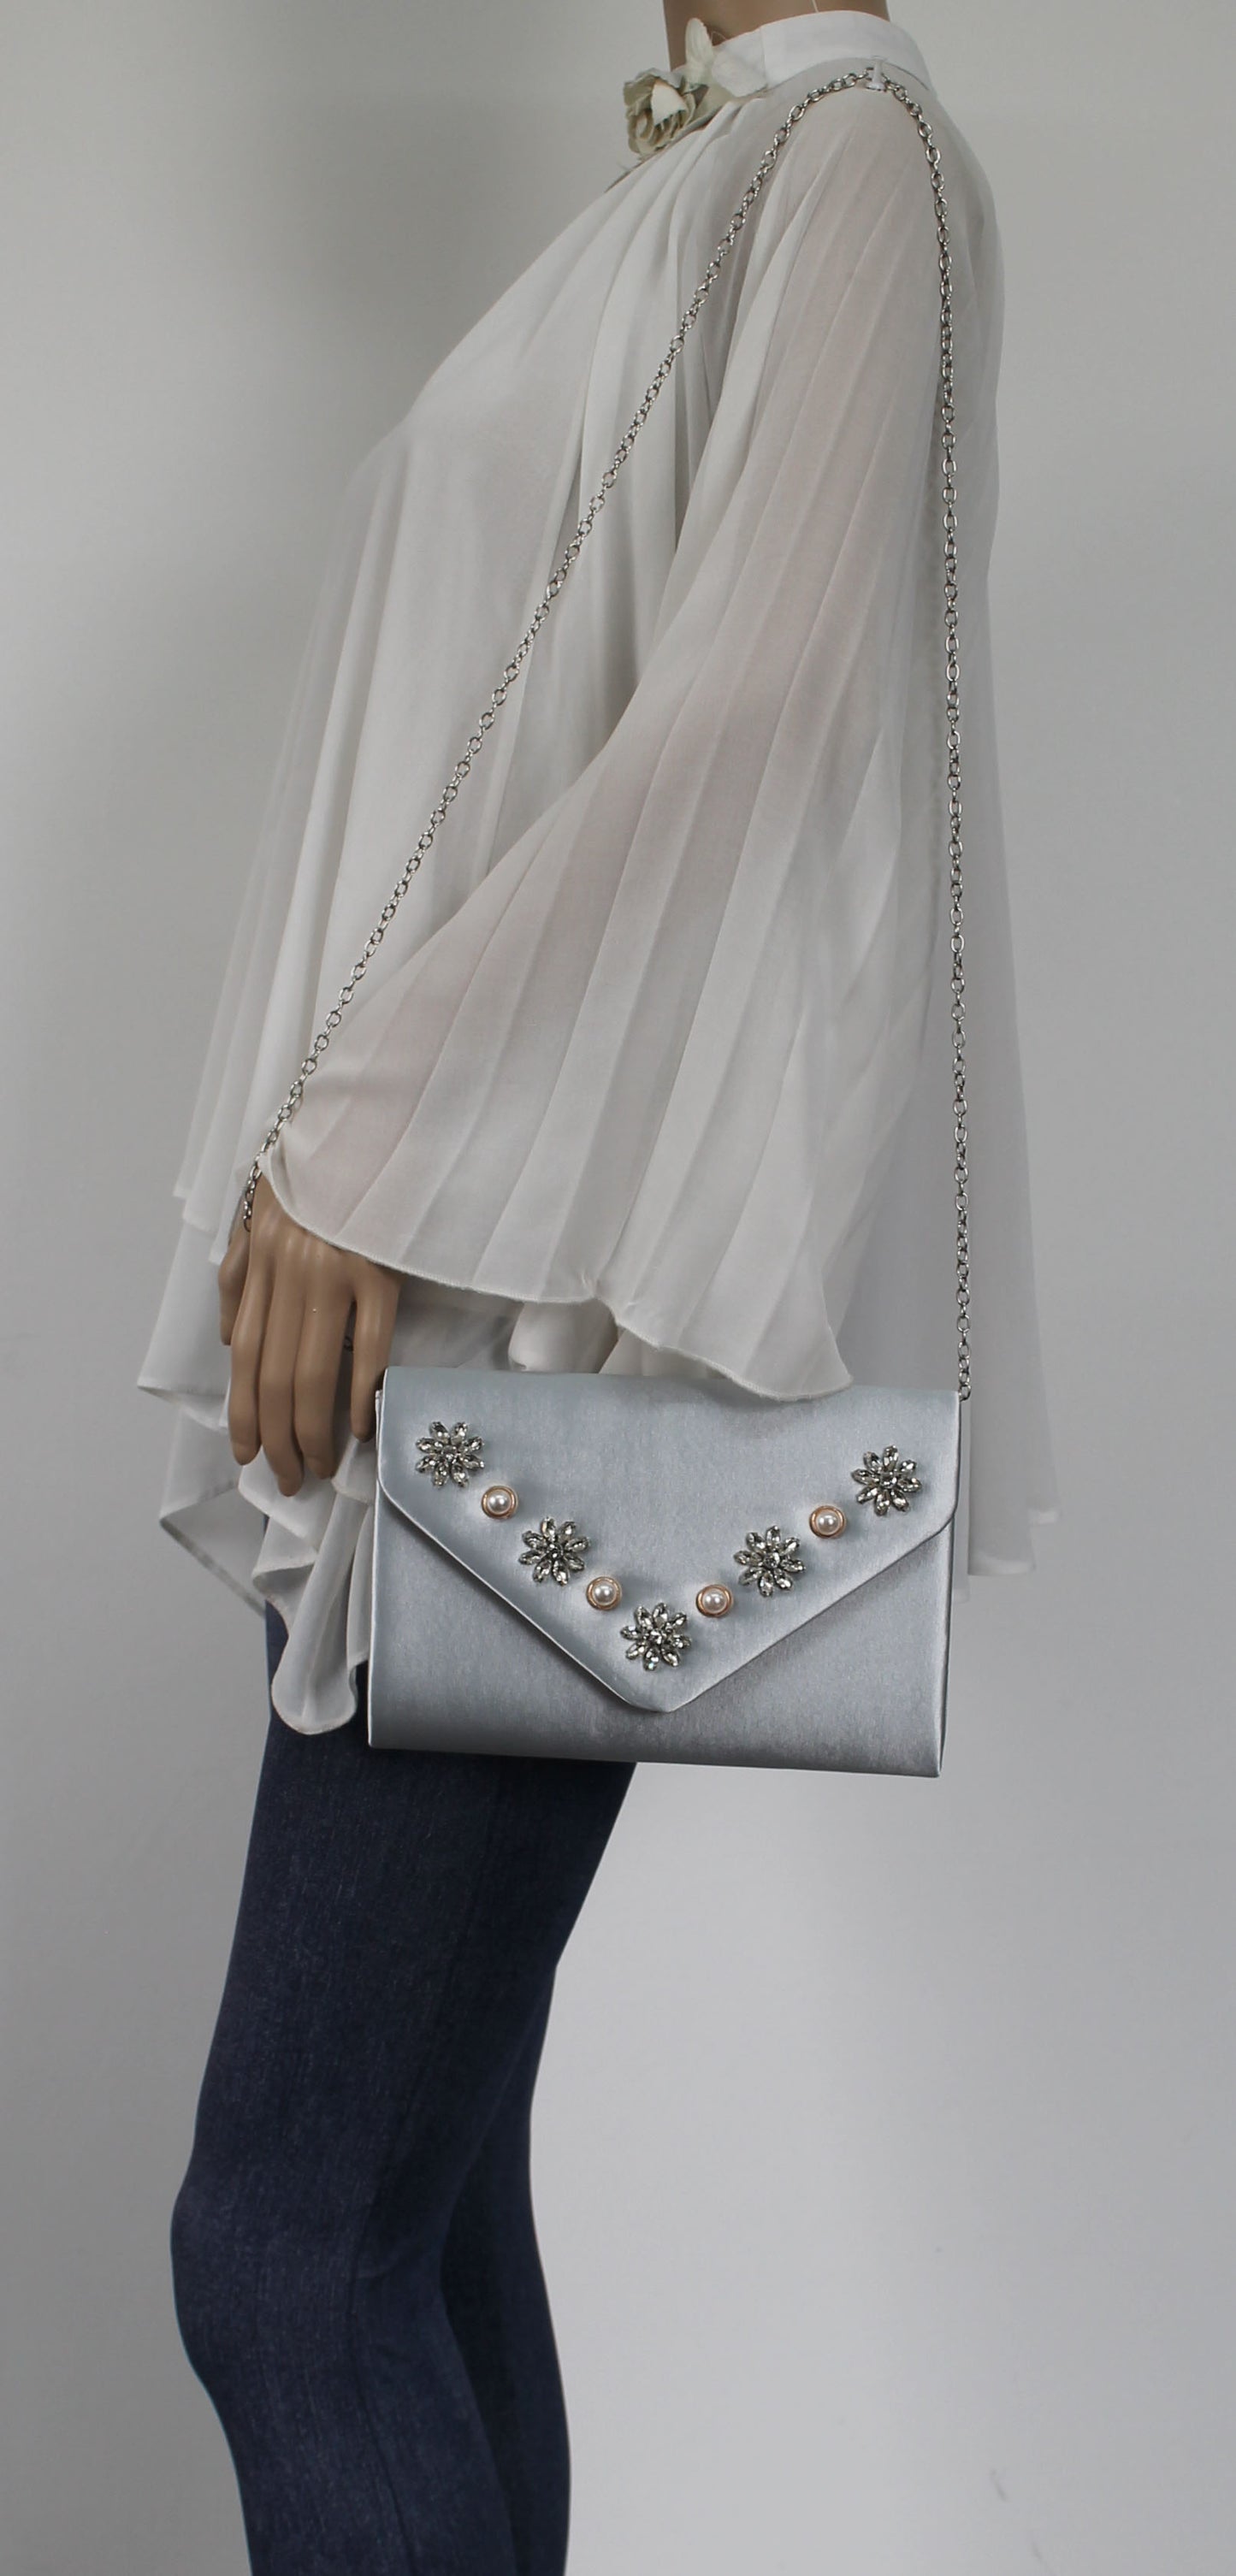 SWANKYSWANS Leila Clutch Bag Silver Cute Cheap Clutch Bag For Weddings School and Work